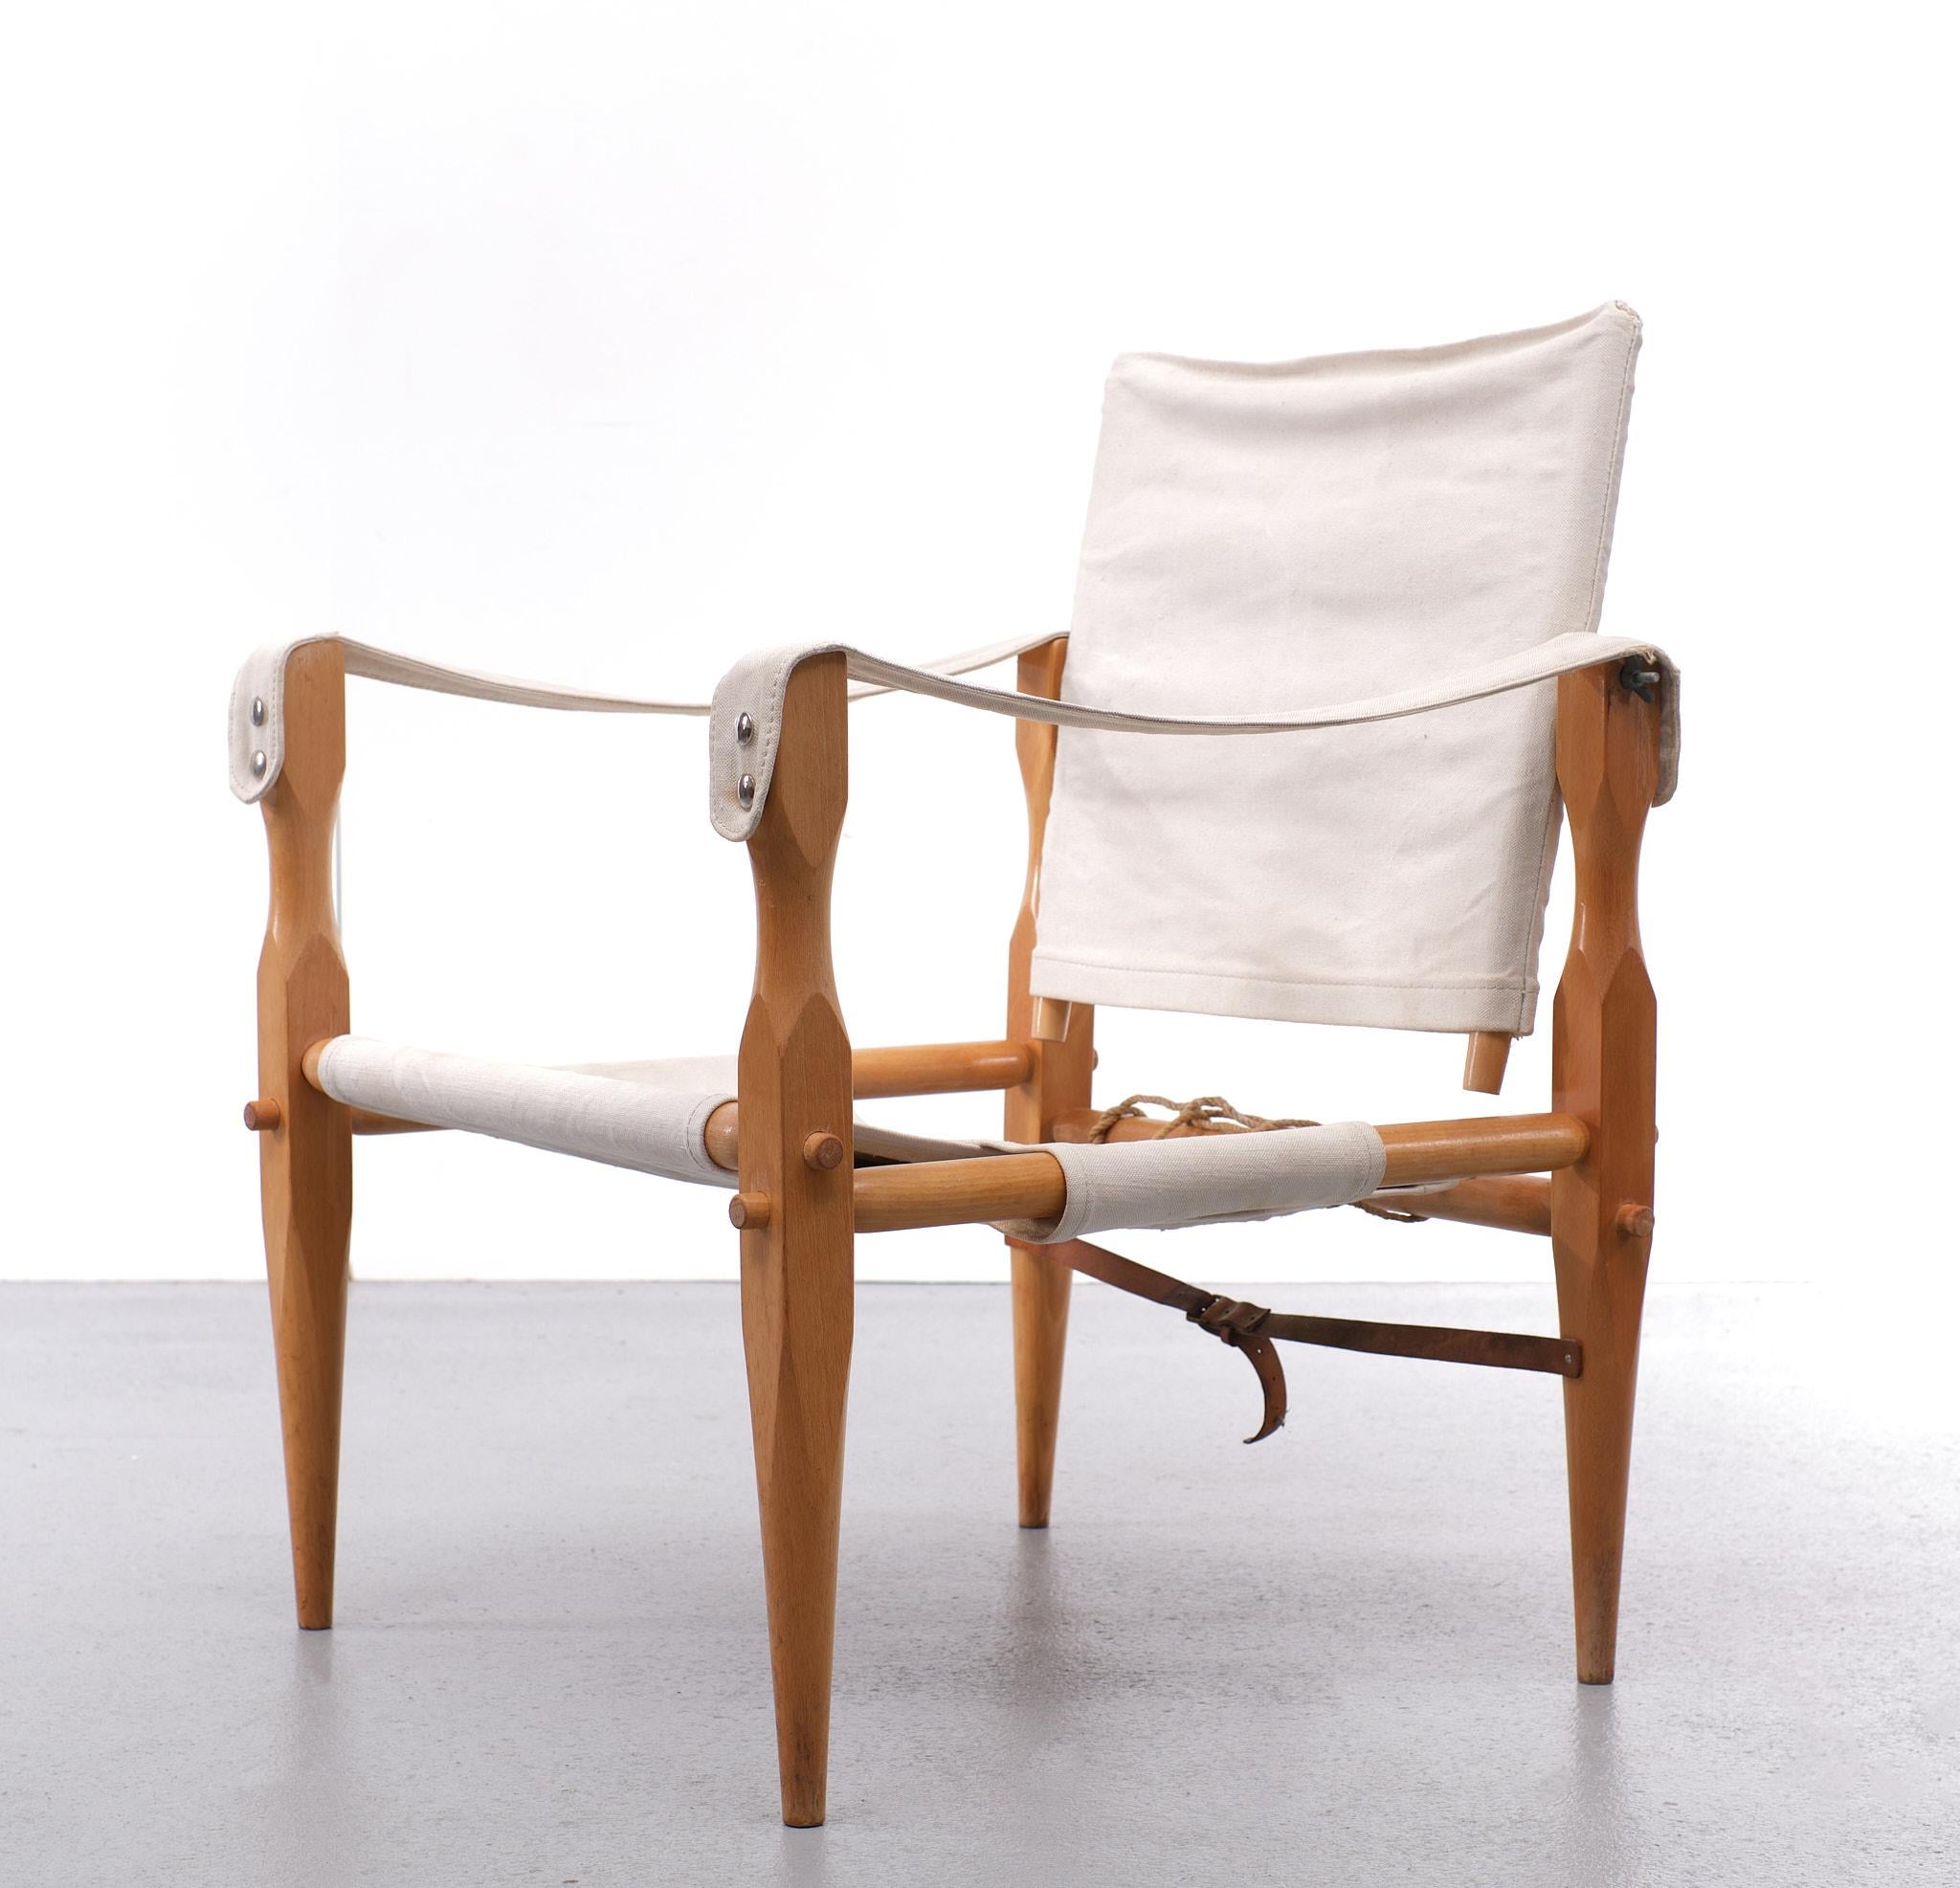 Très beau fauteuil Safari. Cadre démontable en bois de hêtre. Livré avec une toile. 
rembourrage. Bon état. Années 1960 Danemark.